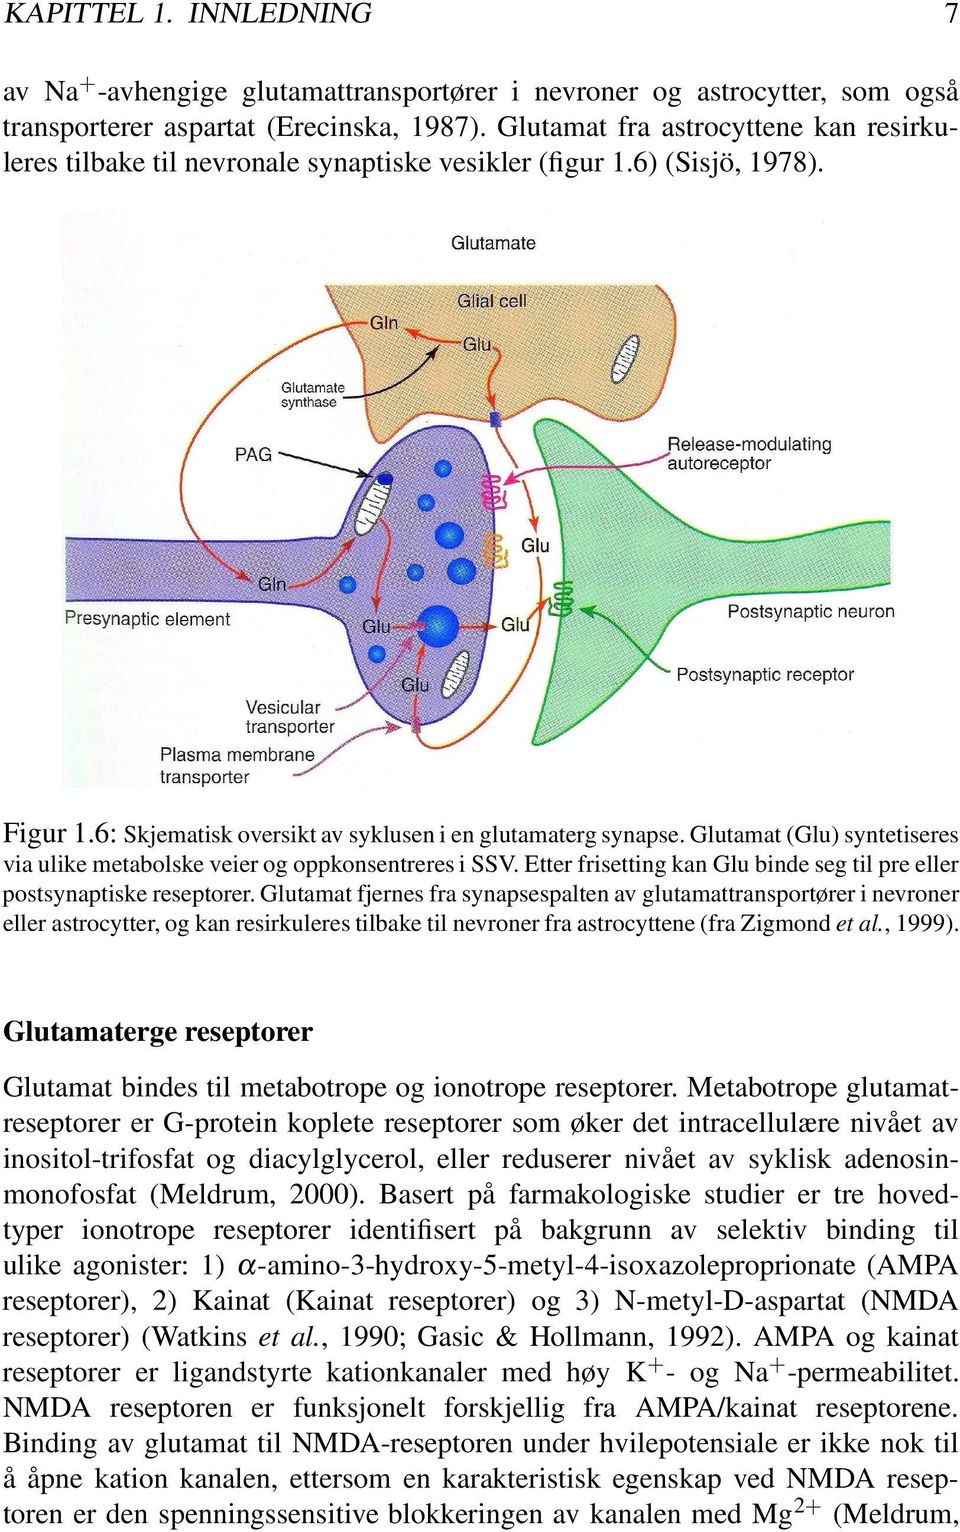 Glutamat (Glu) syntetiseres via ulike metabolske veier og oppkonsentreres i SSV. Etter frisetting kan Glu binde seg til pre eller postsynaptiske reseptorer.